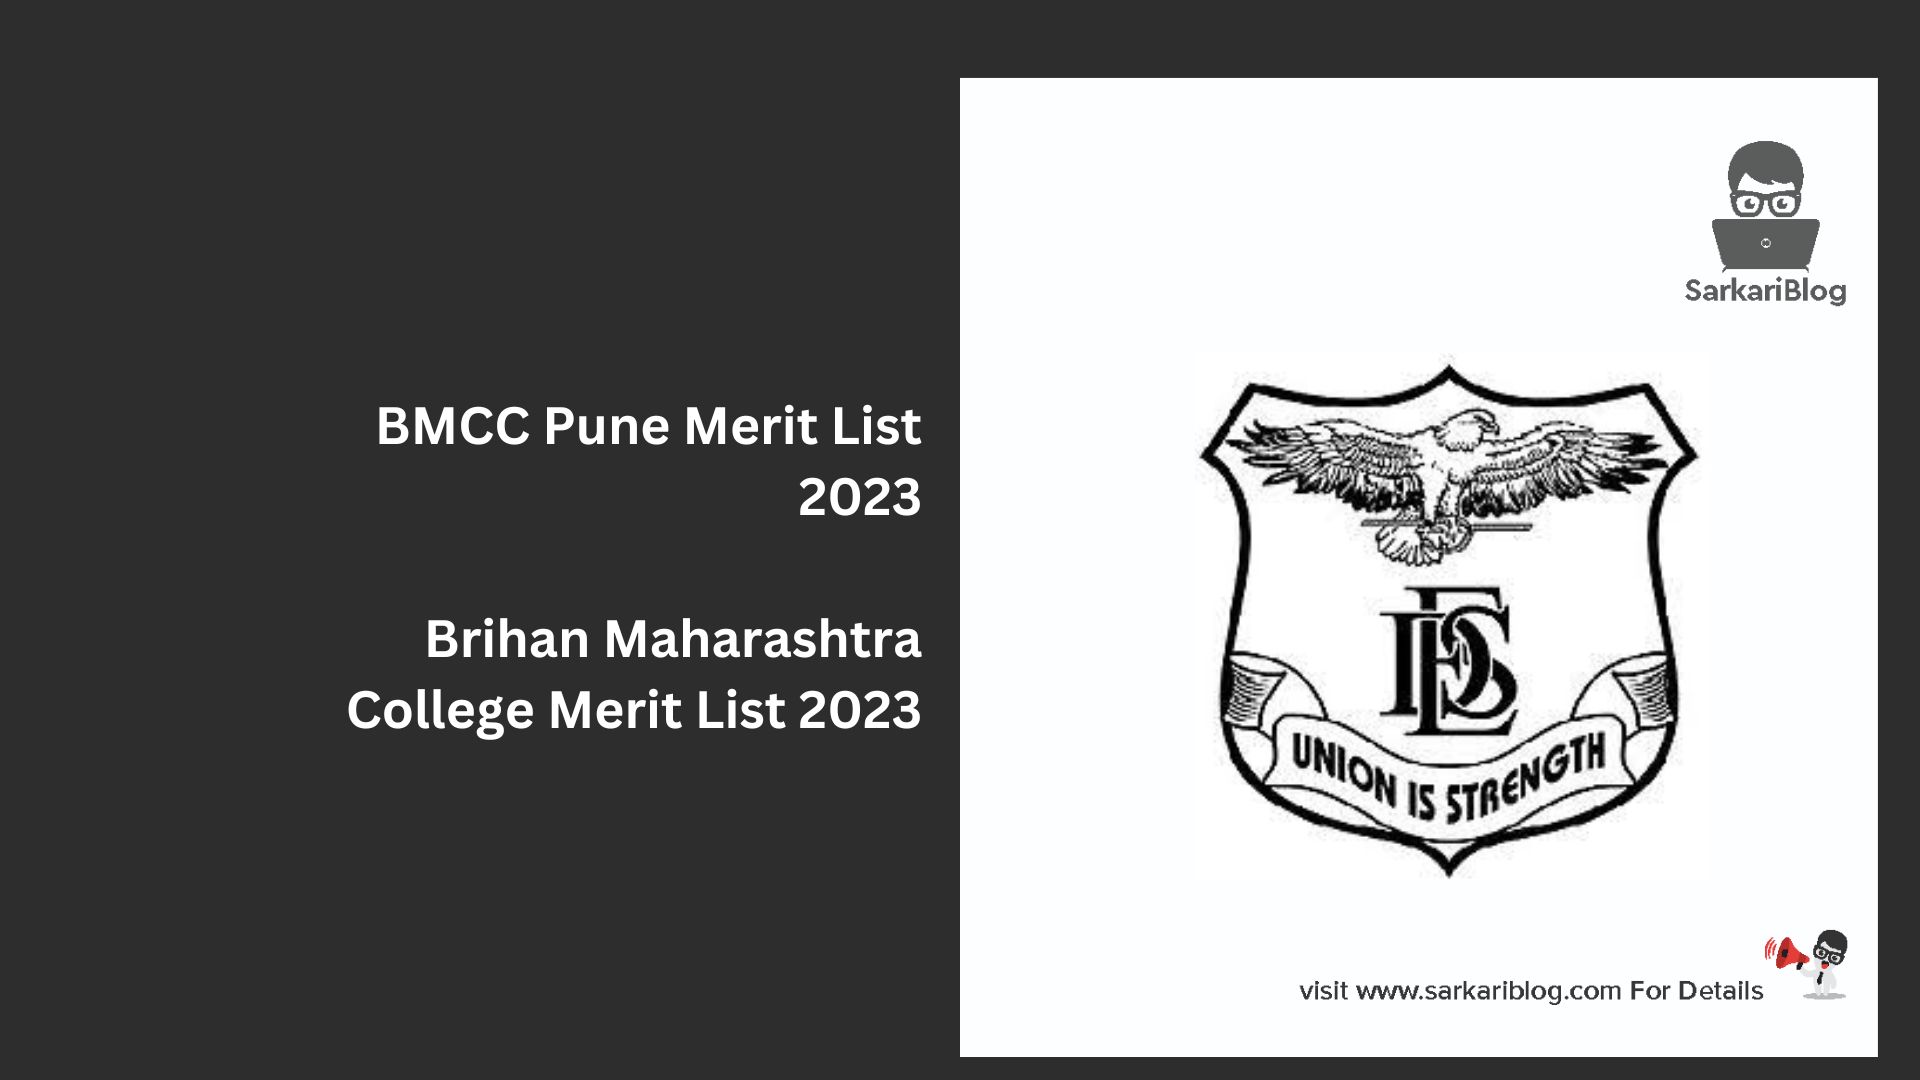 BMCC Pune Merit List 2023